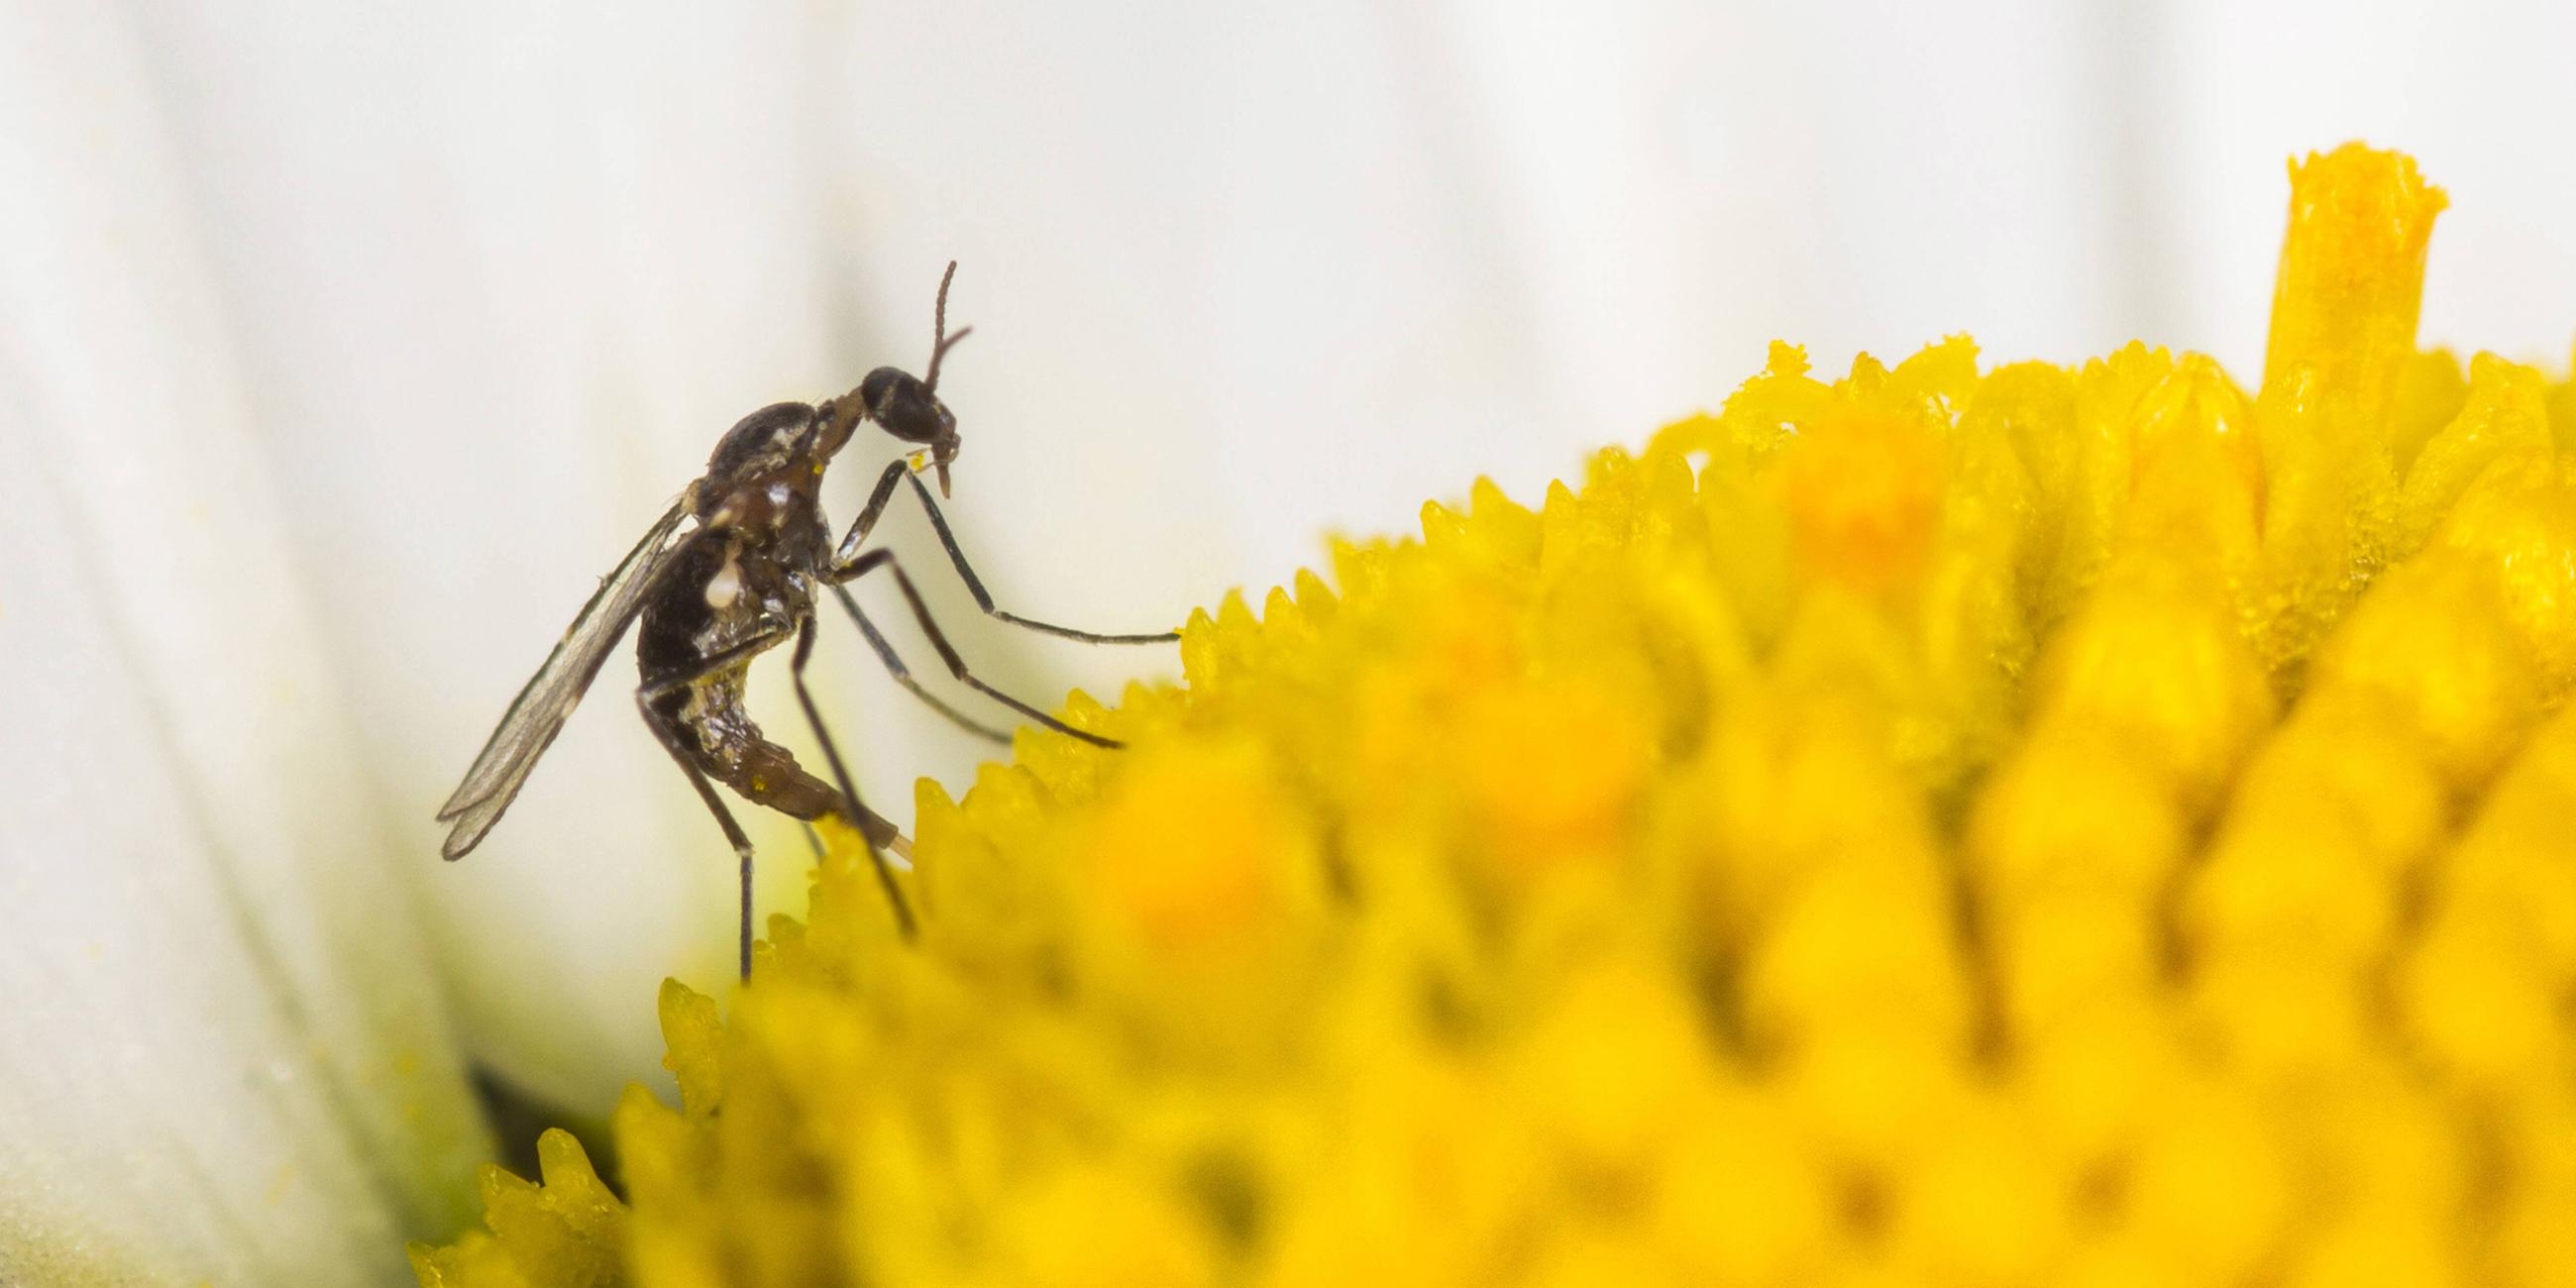 Archiv:Archiv: Trauermücke (Bradysia spec.), Weibchen bei der Eiablage auf der Blüte einer Magerwiesen-Margerite am 21.05.2014